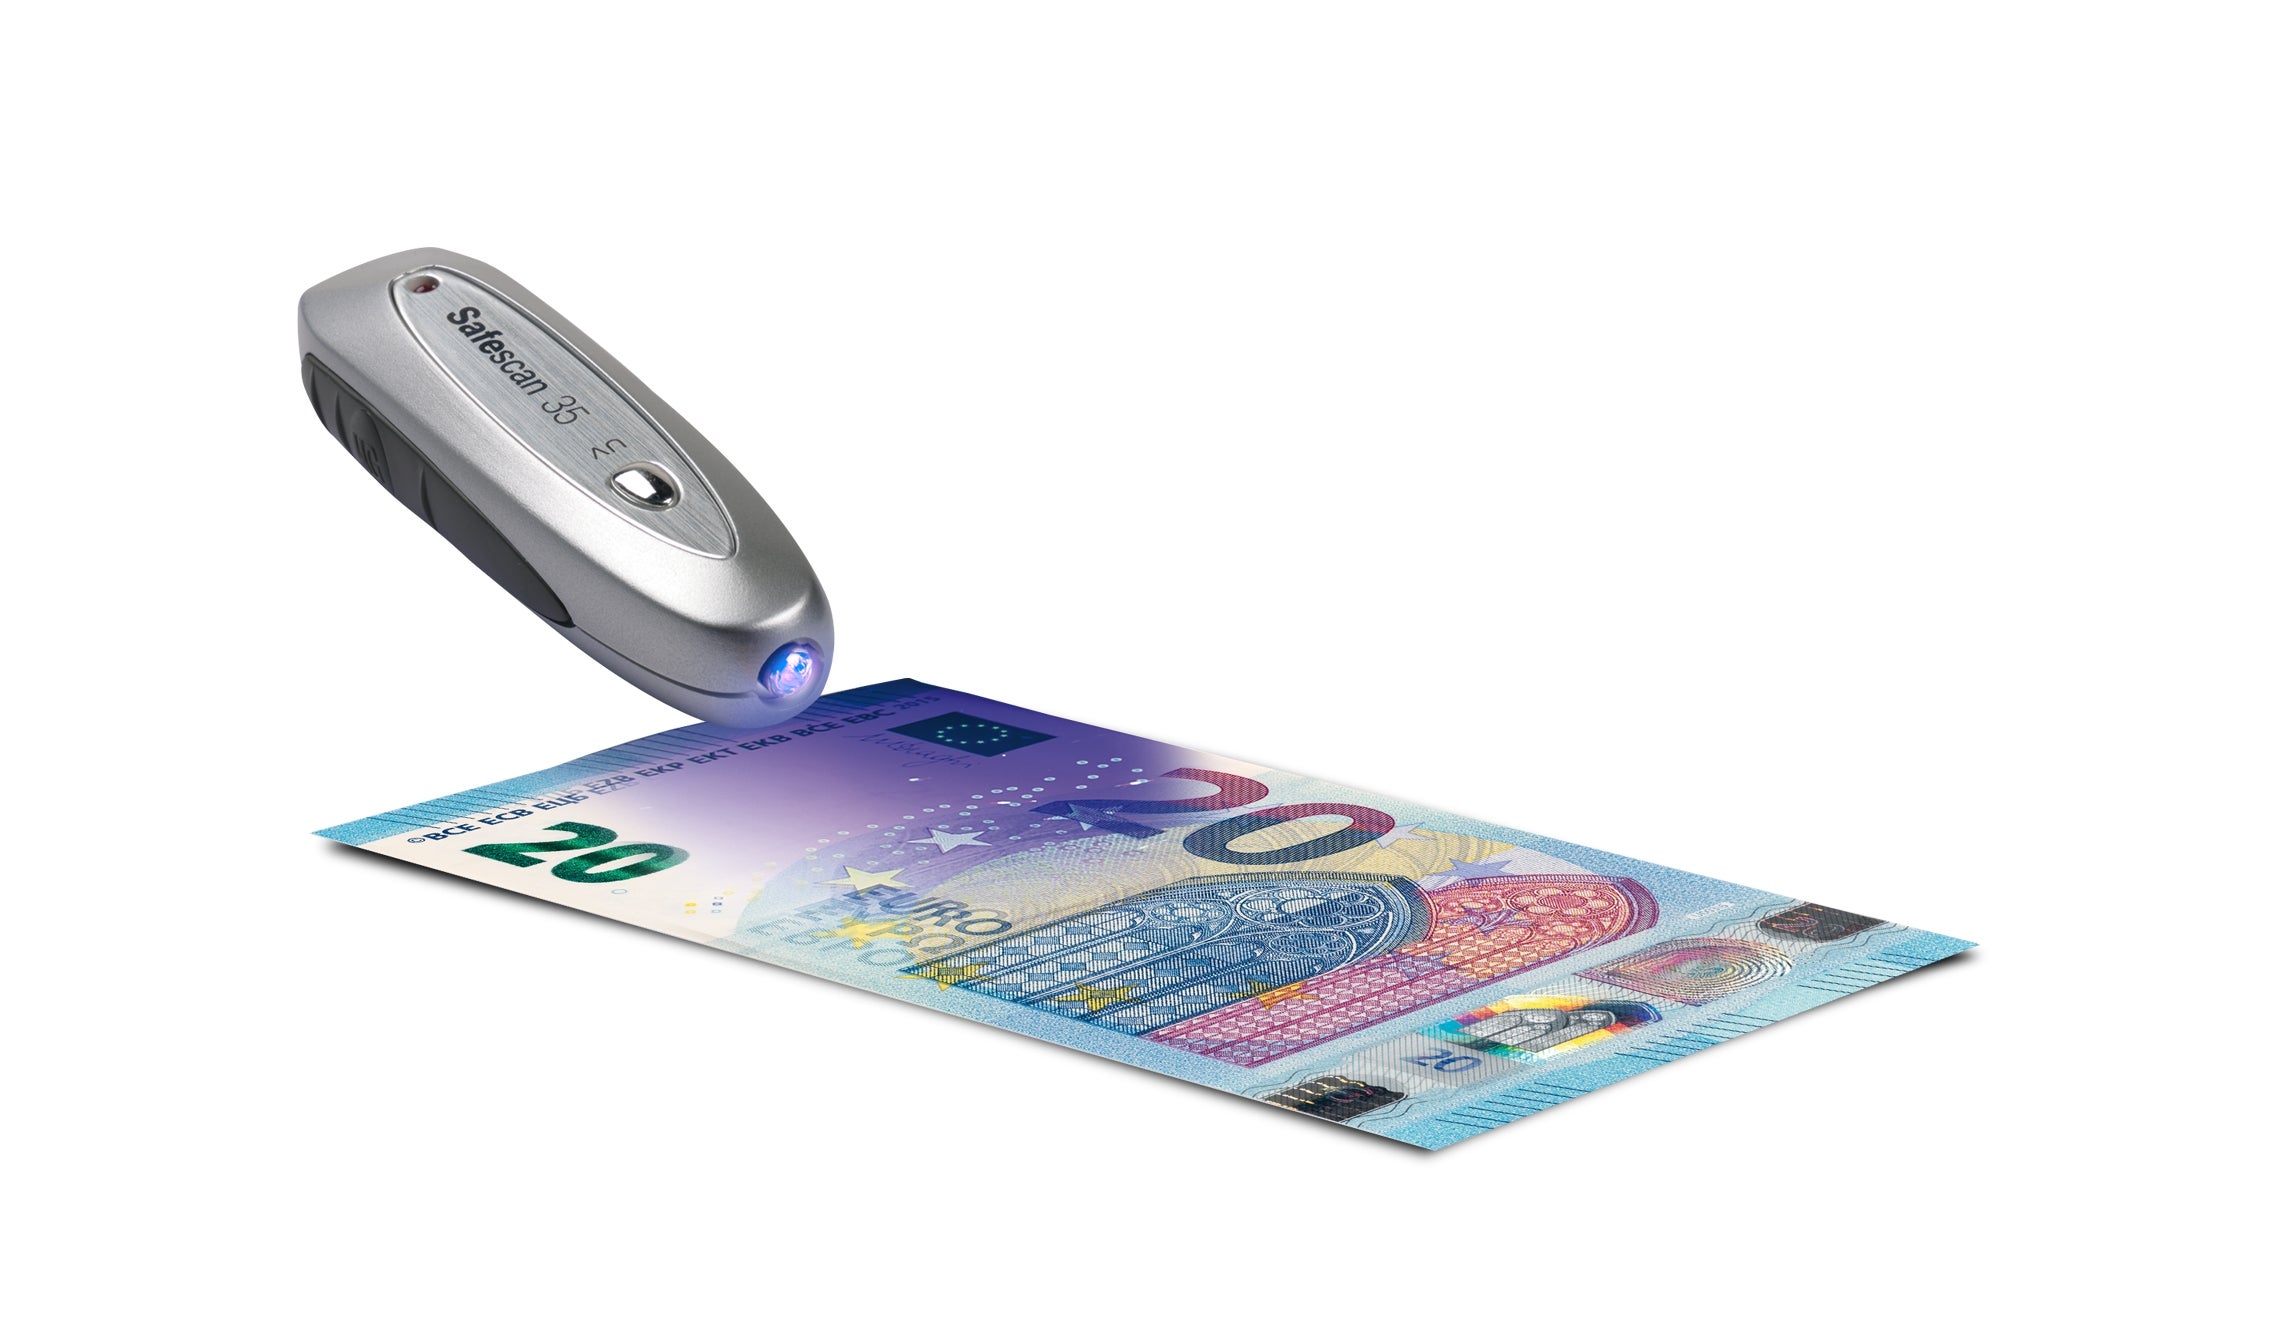 Billetes falsos: cómo usar luz ultravioleta para detectarlos y precios